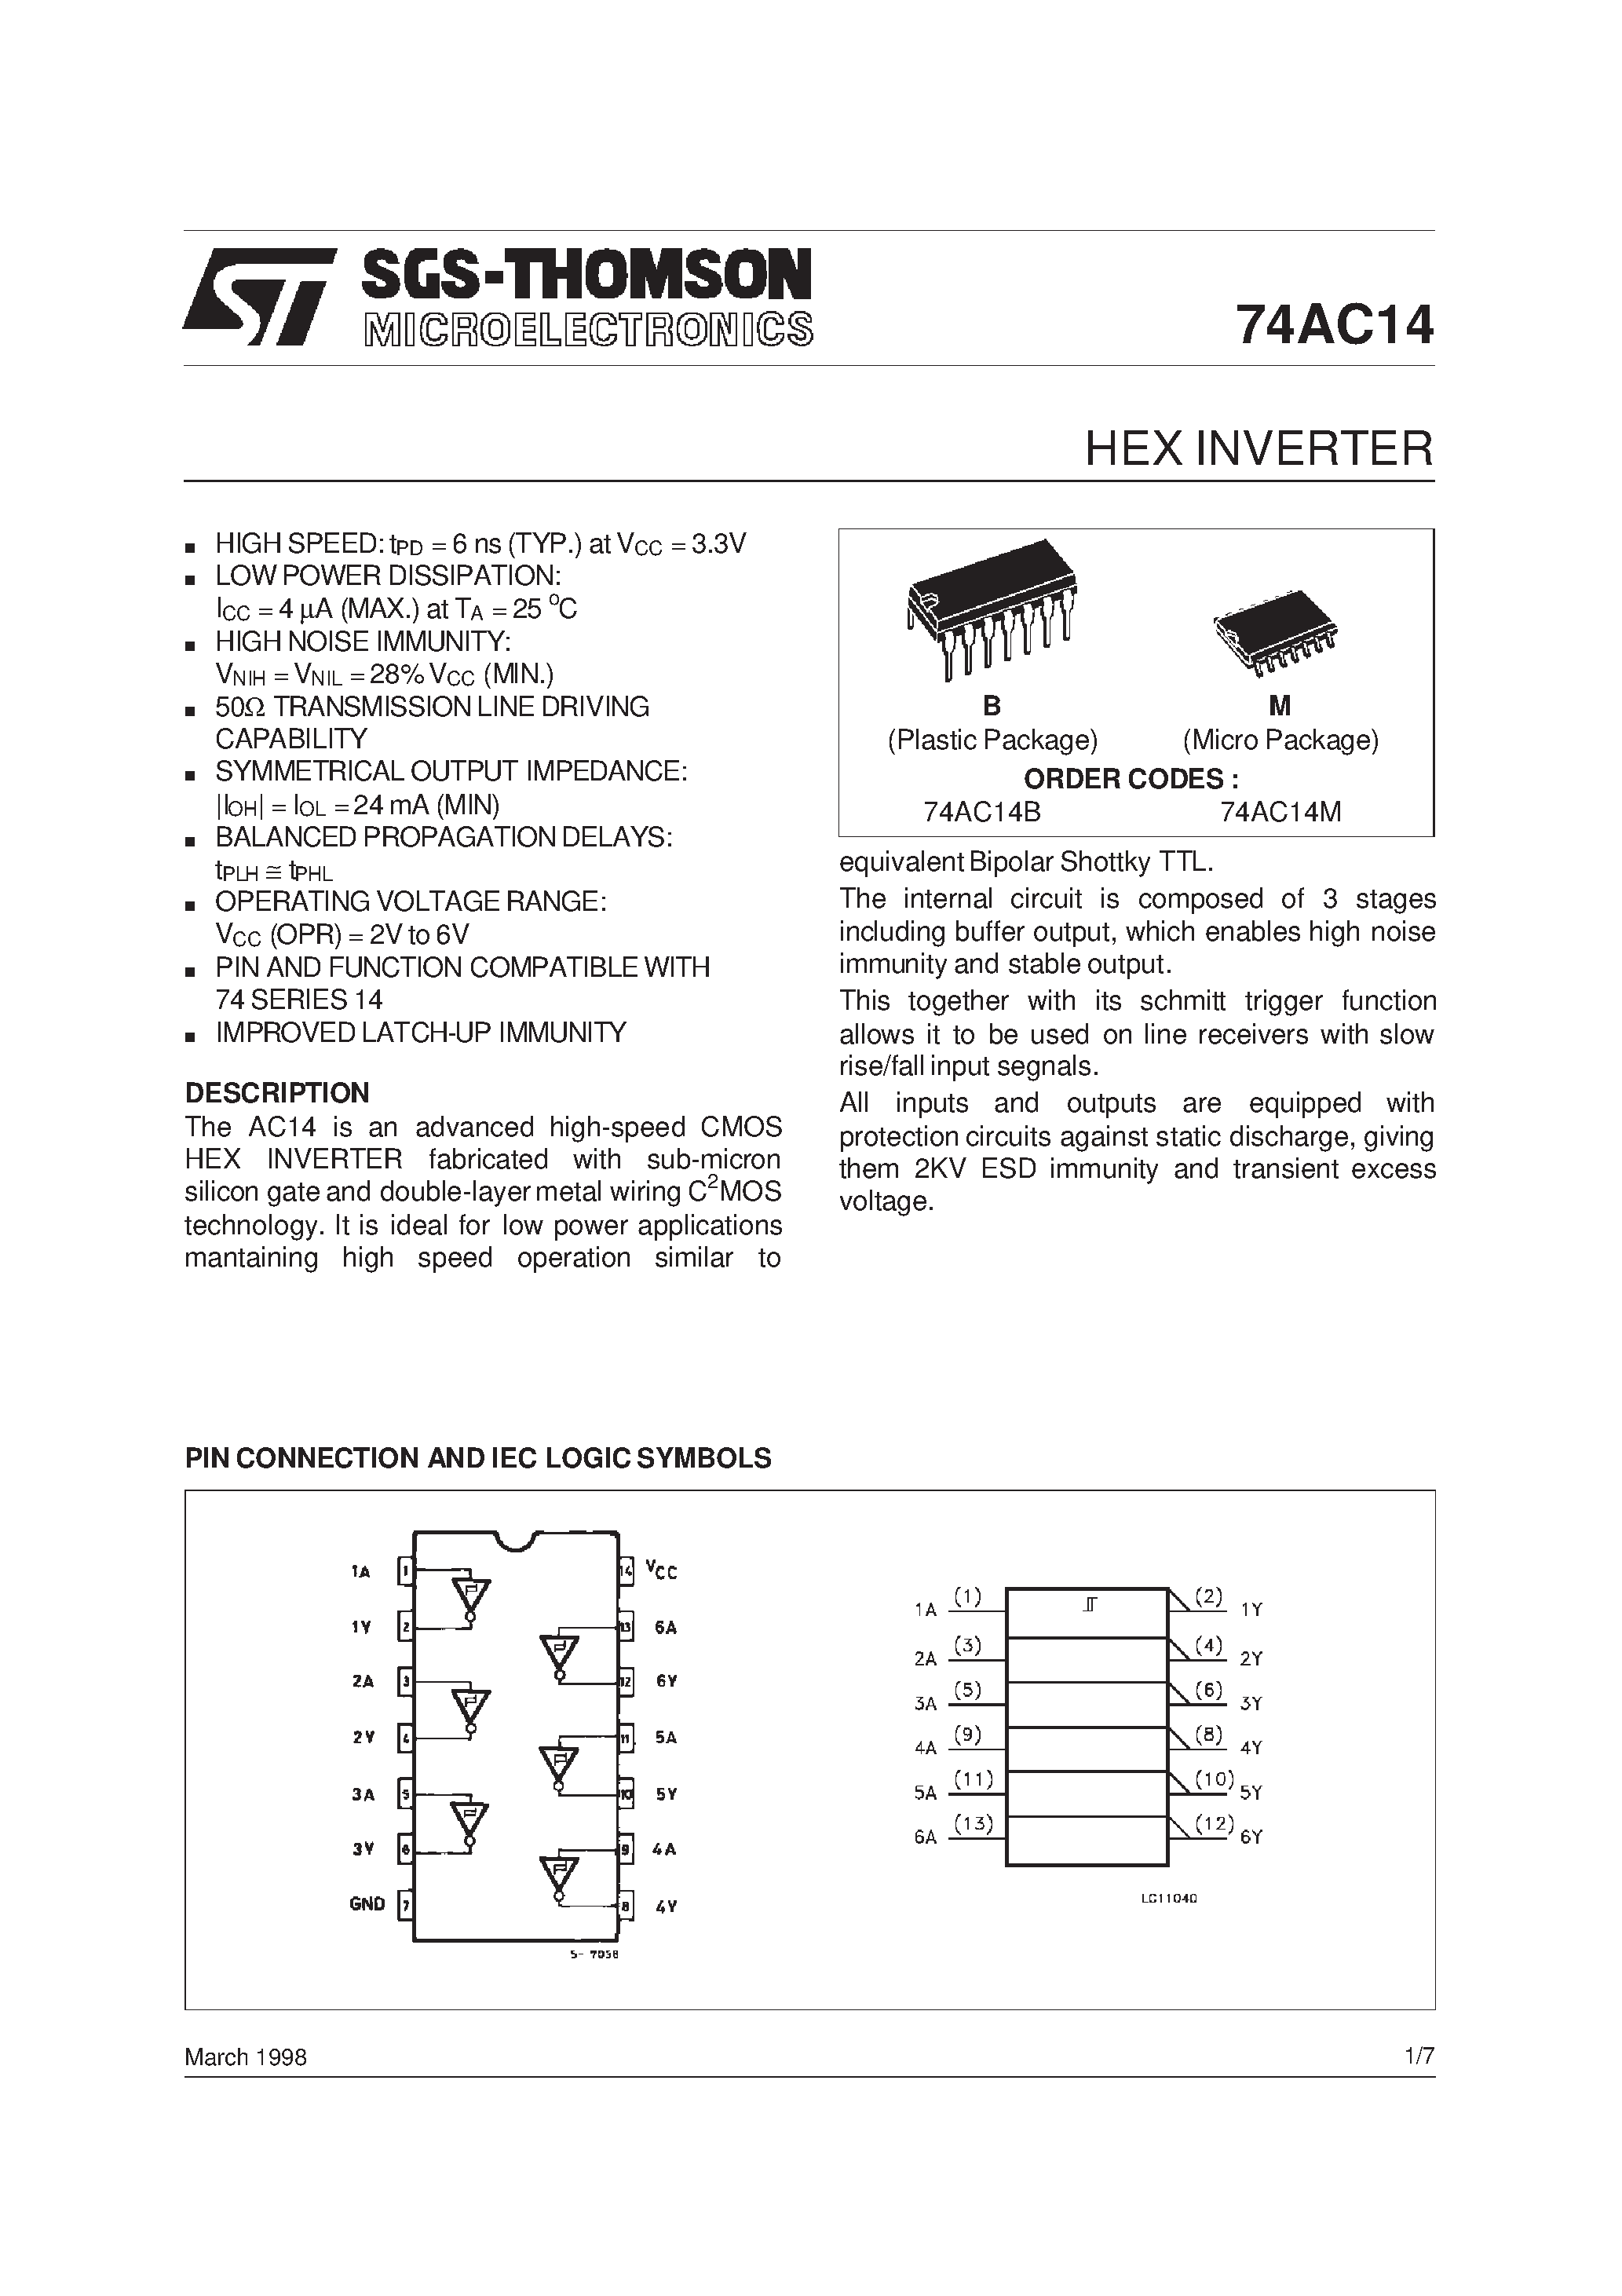 Даташит 74AC14 - Hex Inverter with Schmitt Trigger Input страница 1